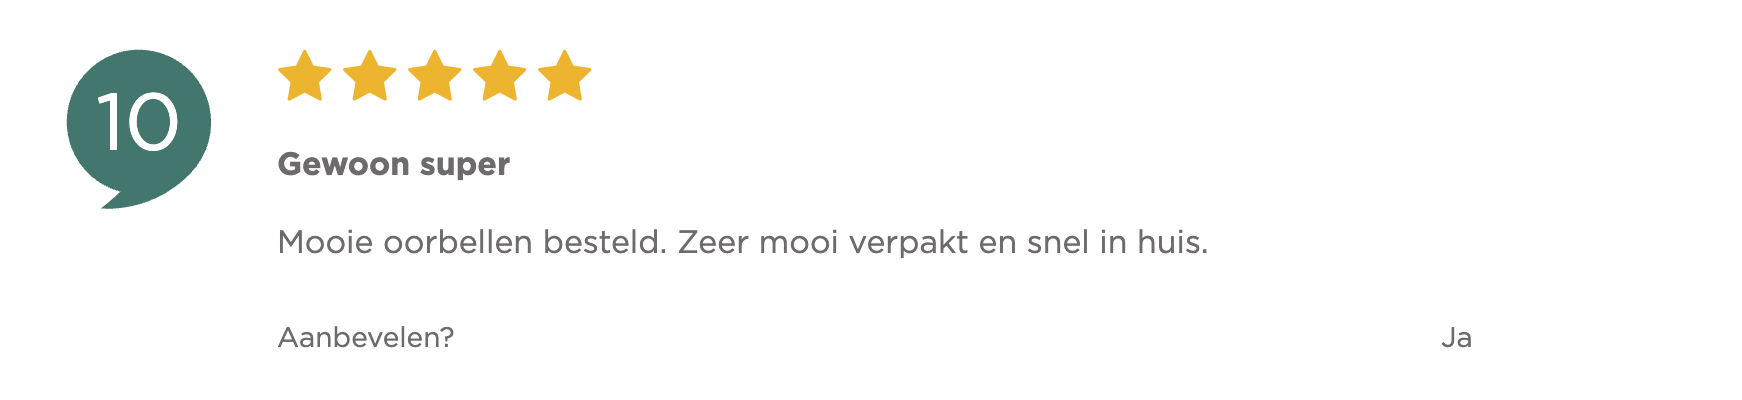 Betrouwbaar adres voor gouden oorbellen Zilver.nl review een 10